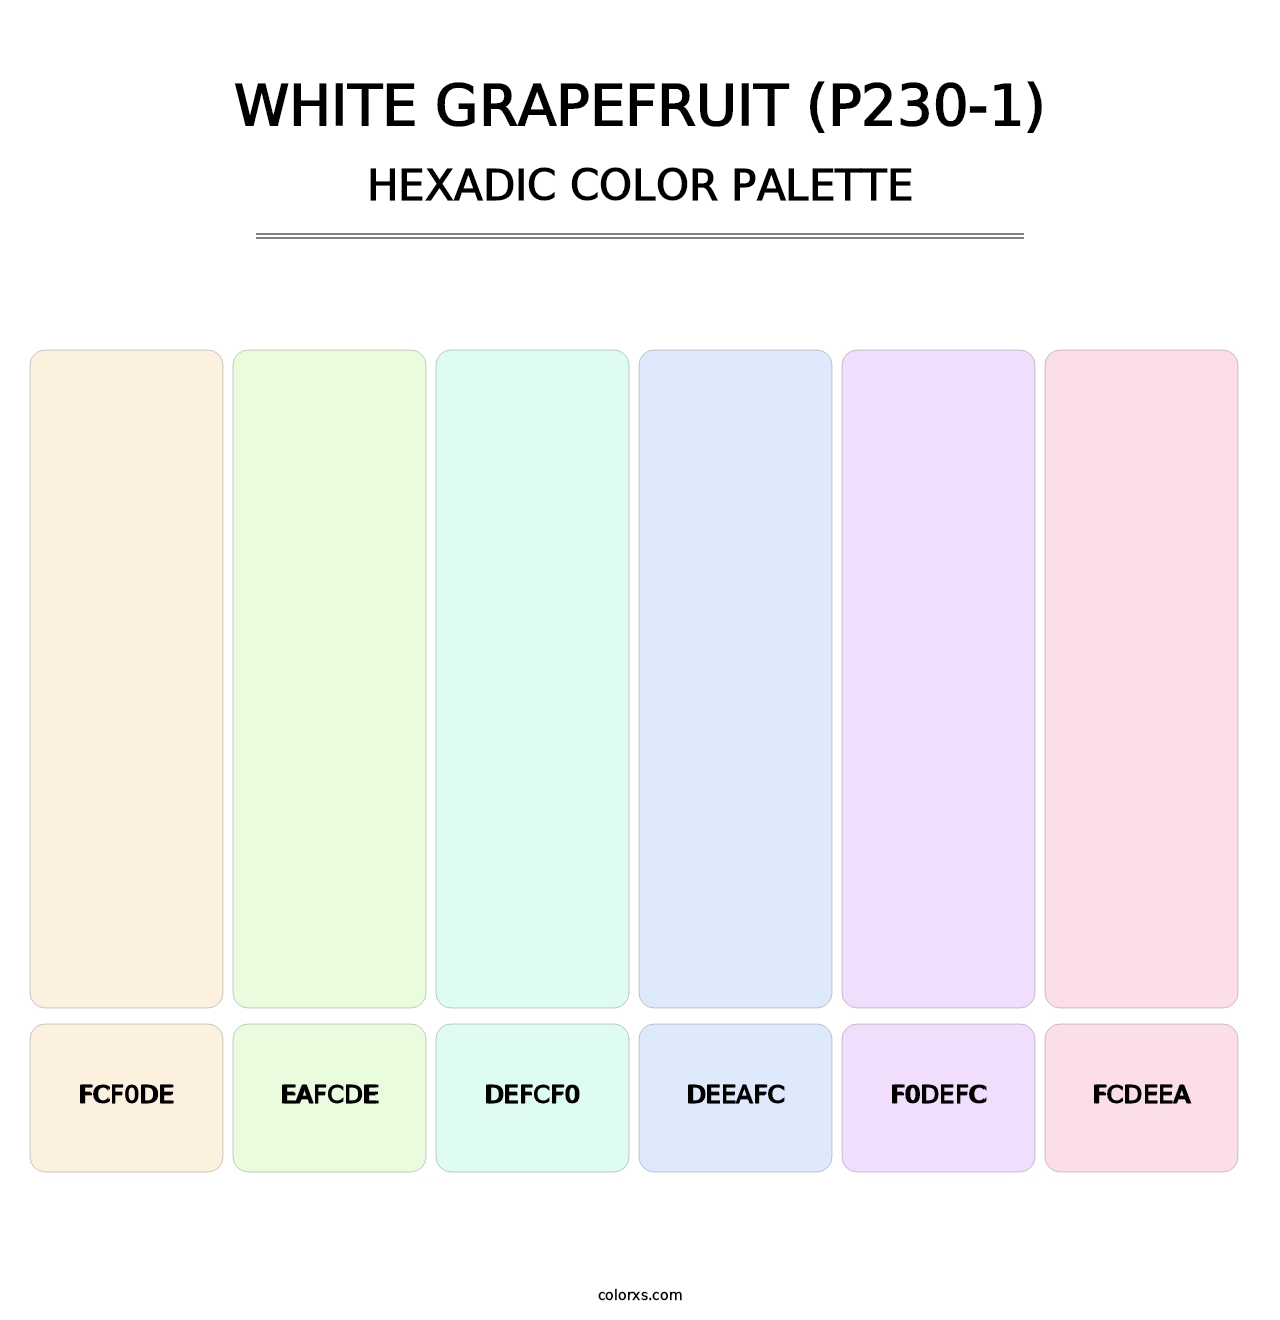 White Grapefruit (P230-1) - Hexadic Color Palette